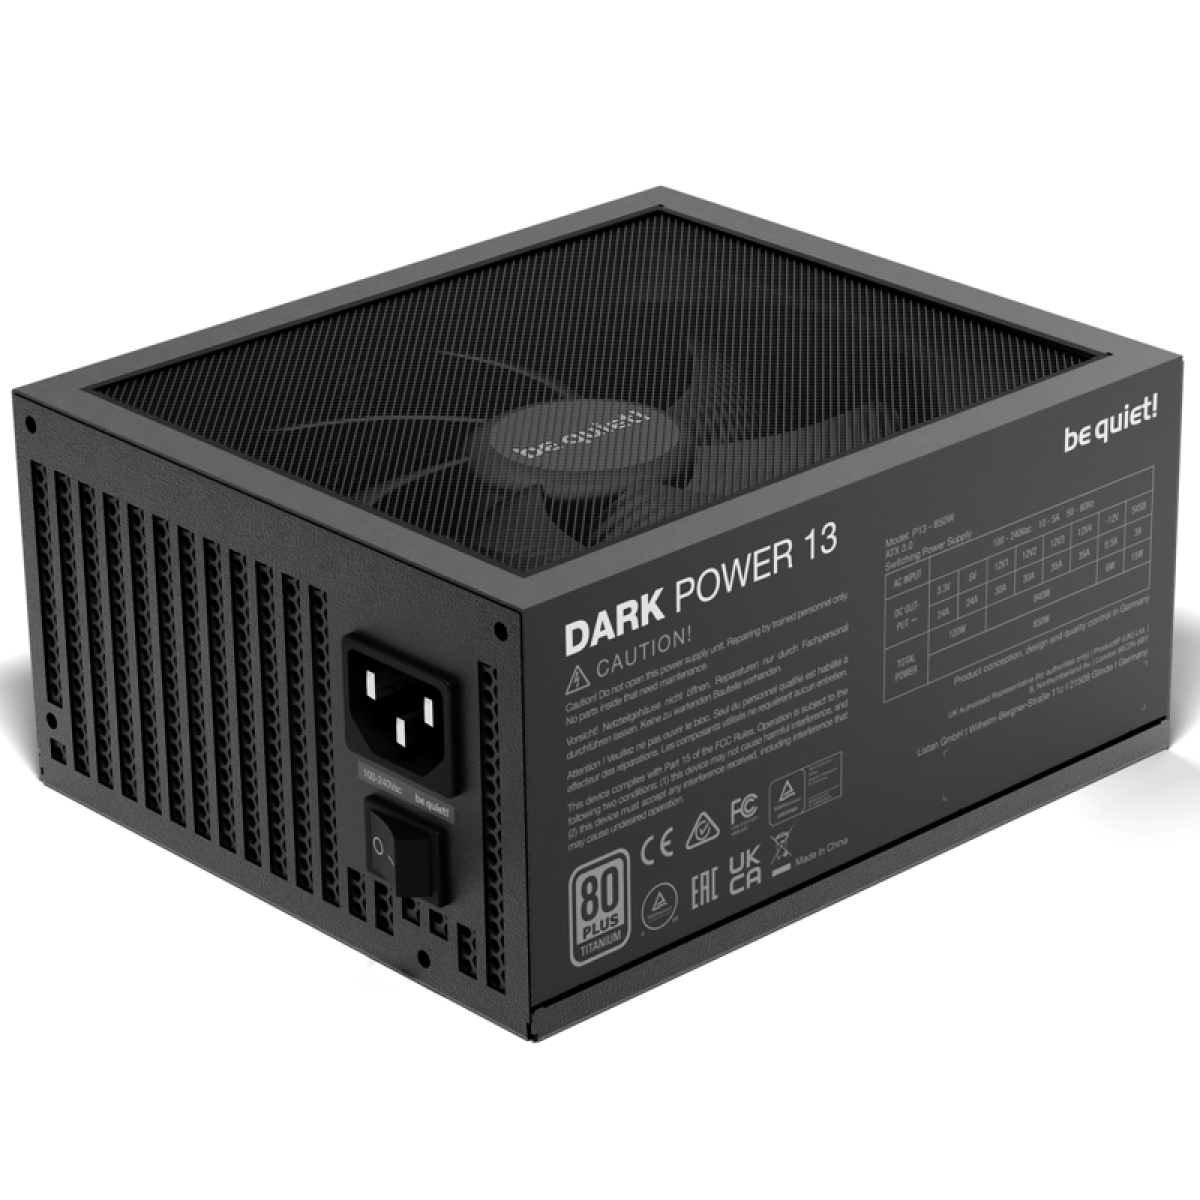 Dark Power 13 - 850 Watt